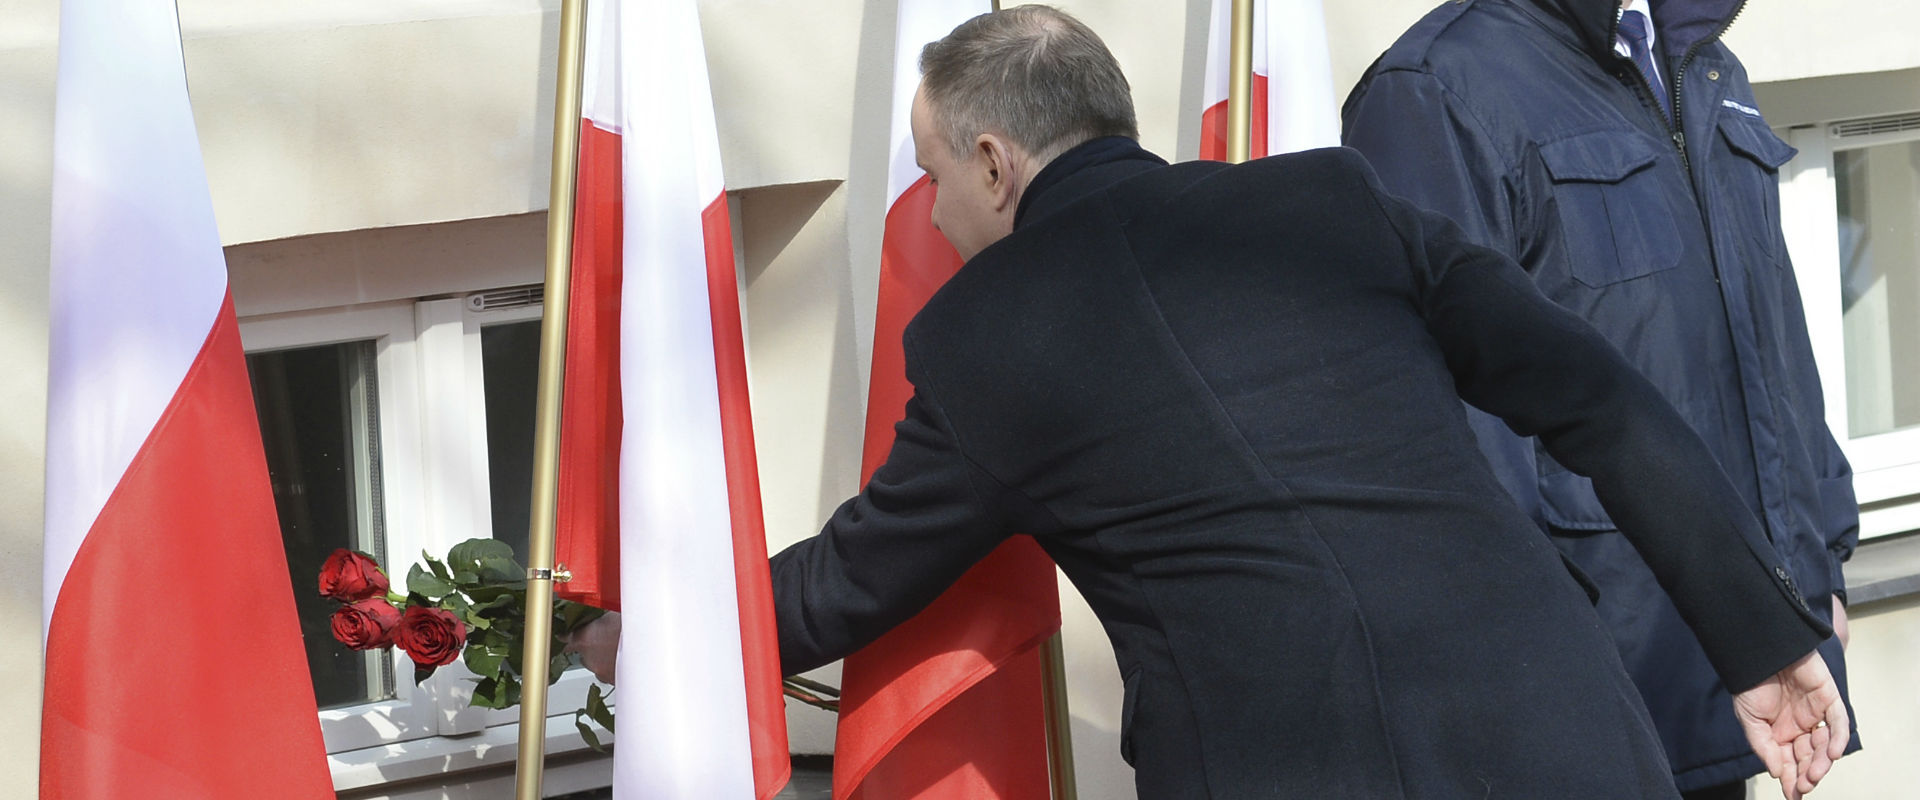 נשיא פולין מניח זר פרחים באוניברסיטת ורשה